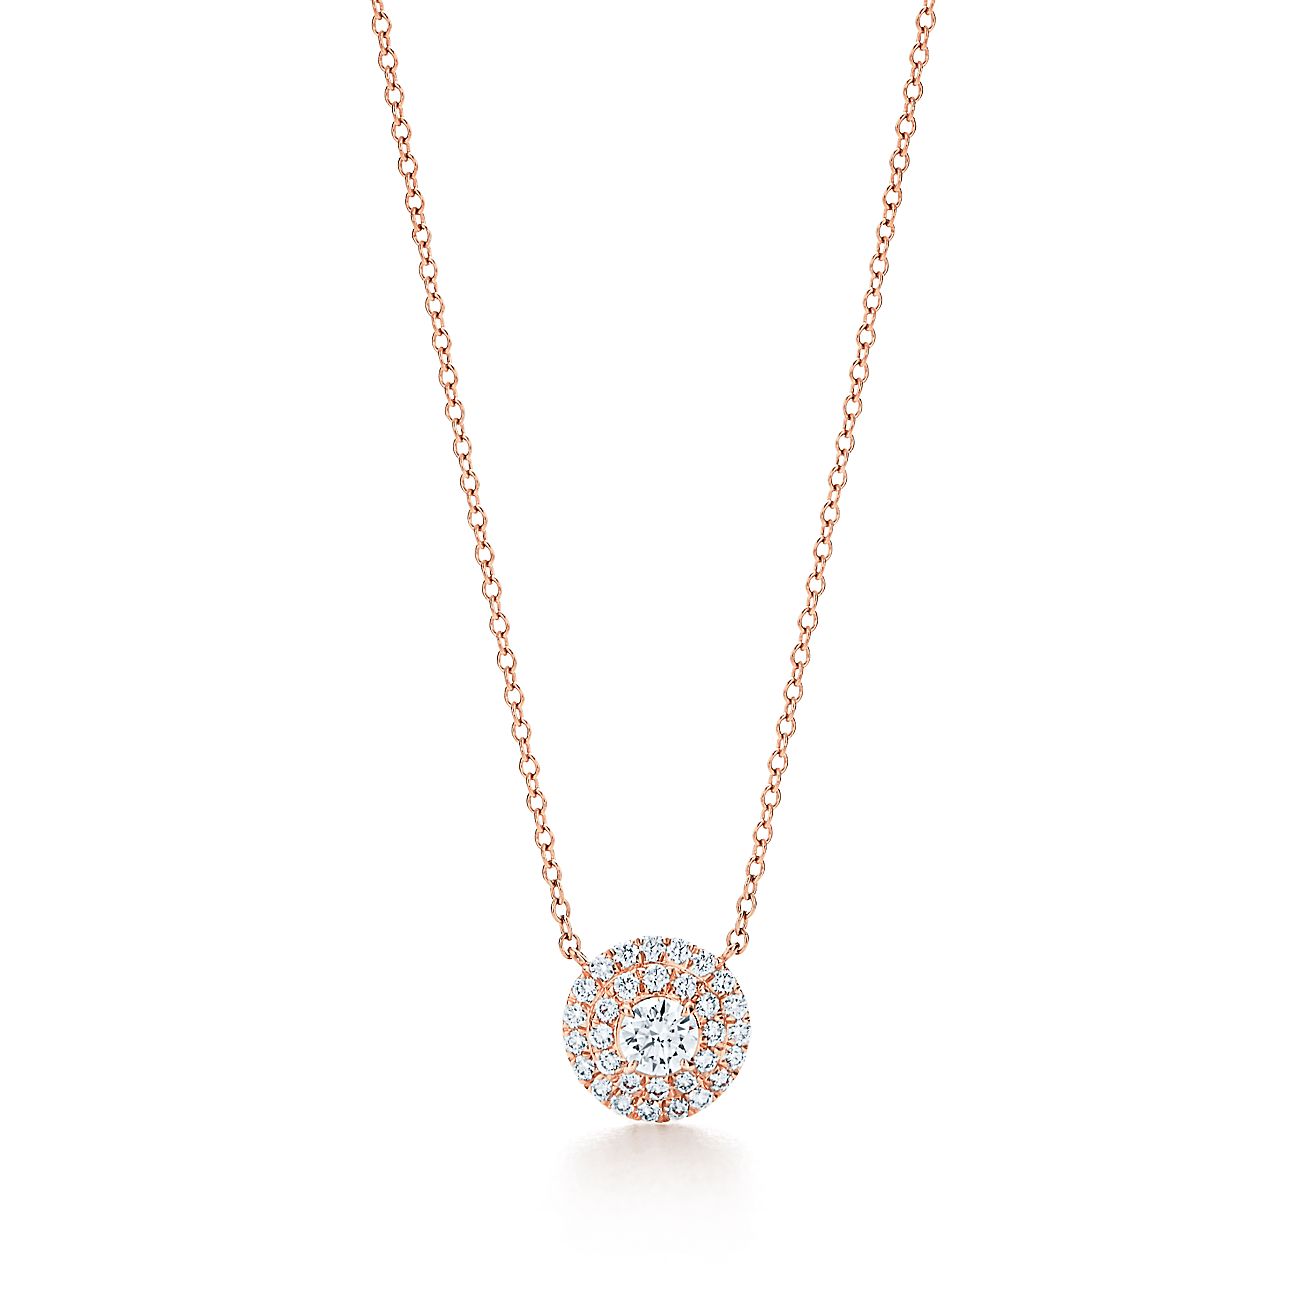 Tiffany Soleste® pendant in 18k rose 